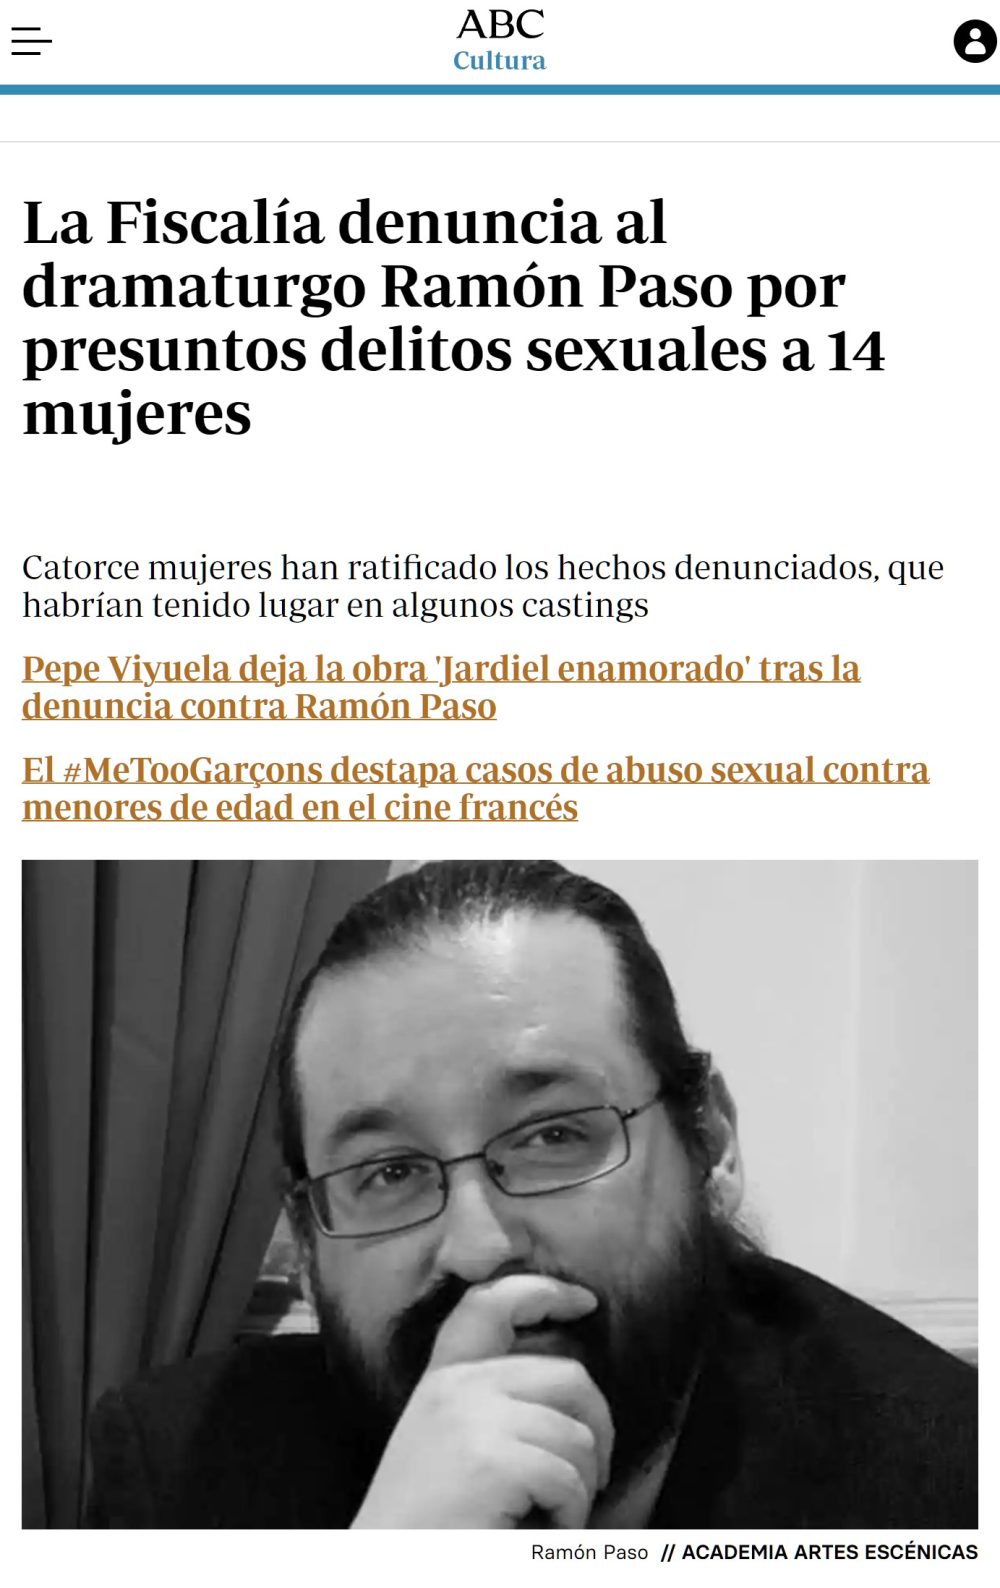 14 mujeres han afirmado haber sido víctimas de abusos sеxuales por parte de Ramón Paso.